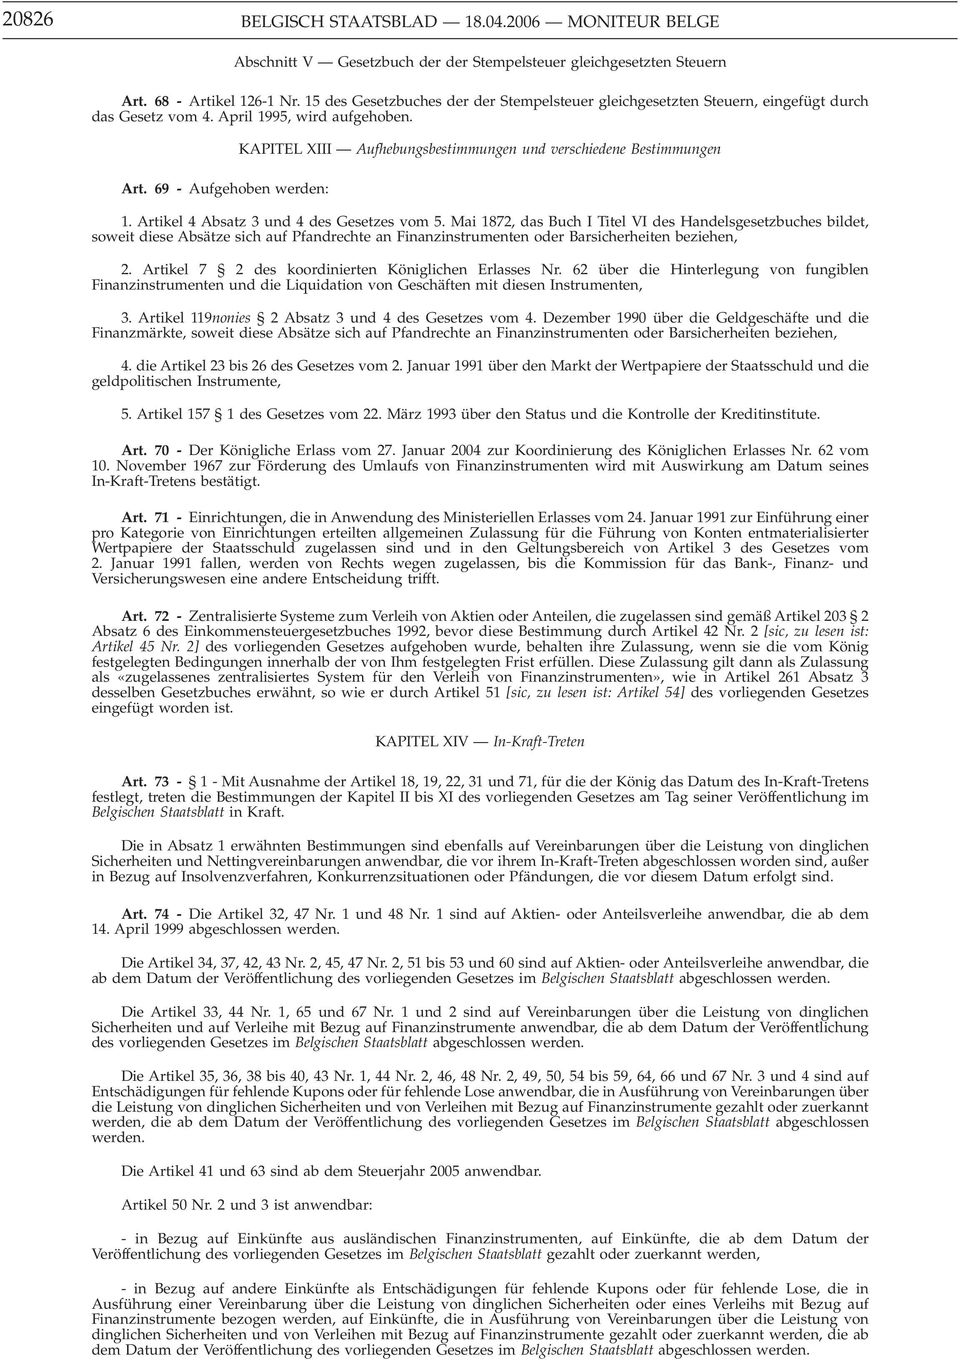 69 - Aufgehoben werden: KAPITEL XIII Aufhebungsbestimmungen und verschiedene Bestimmungen 1. Artikel 4 Absatz 3 und 4 des Gesetzes vom 5.